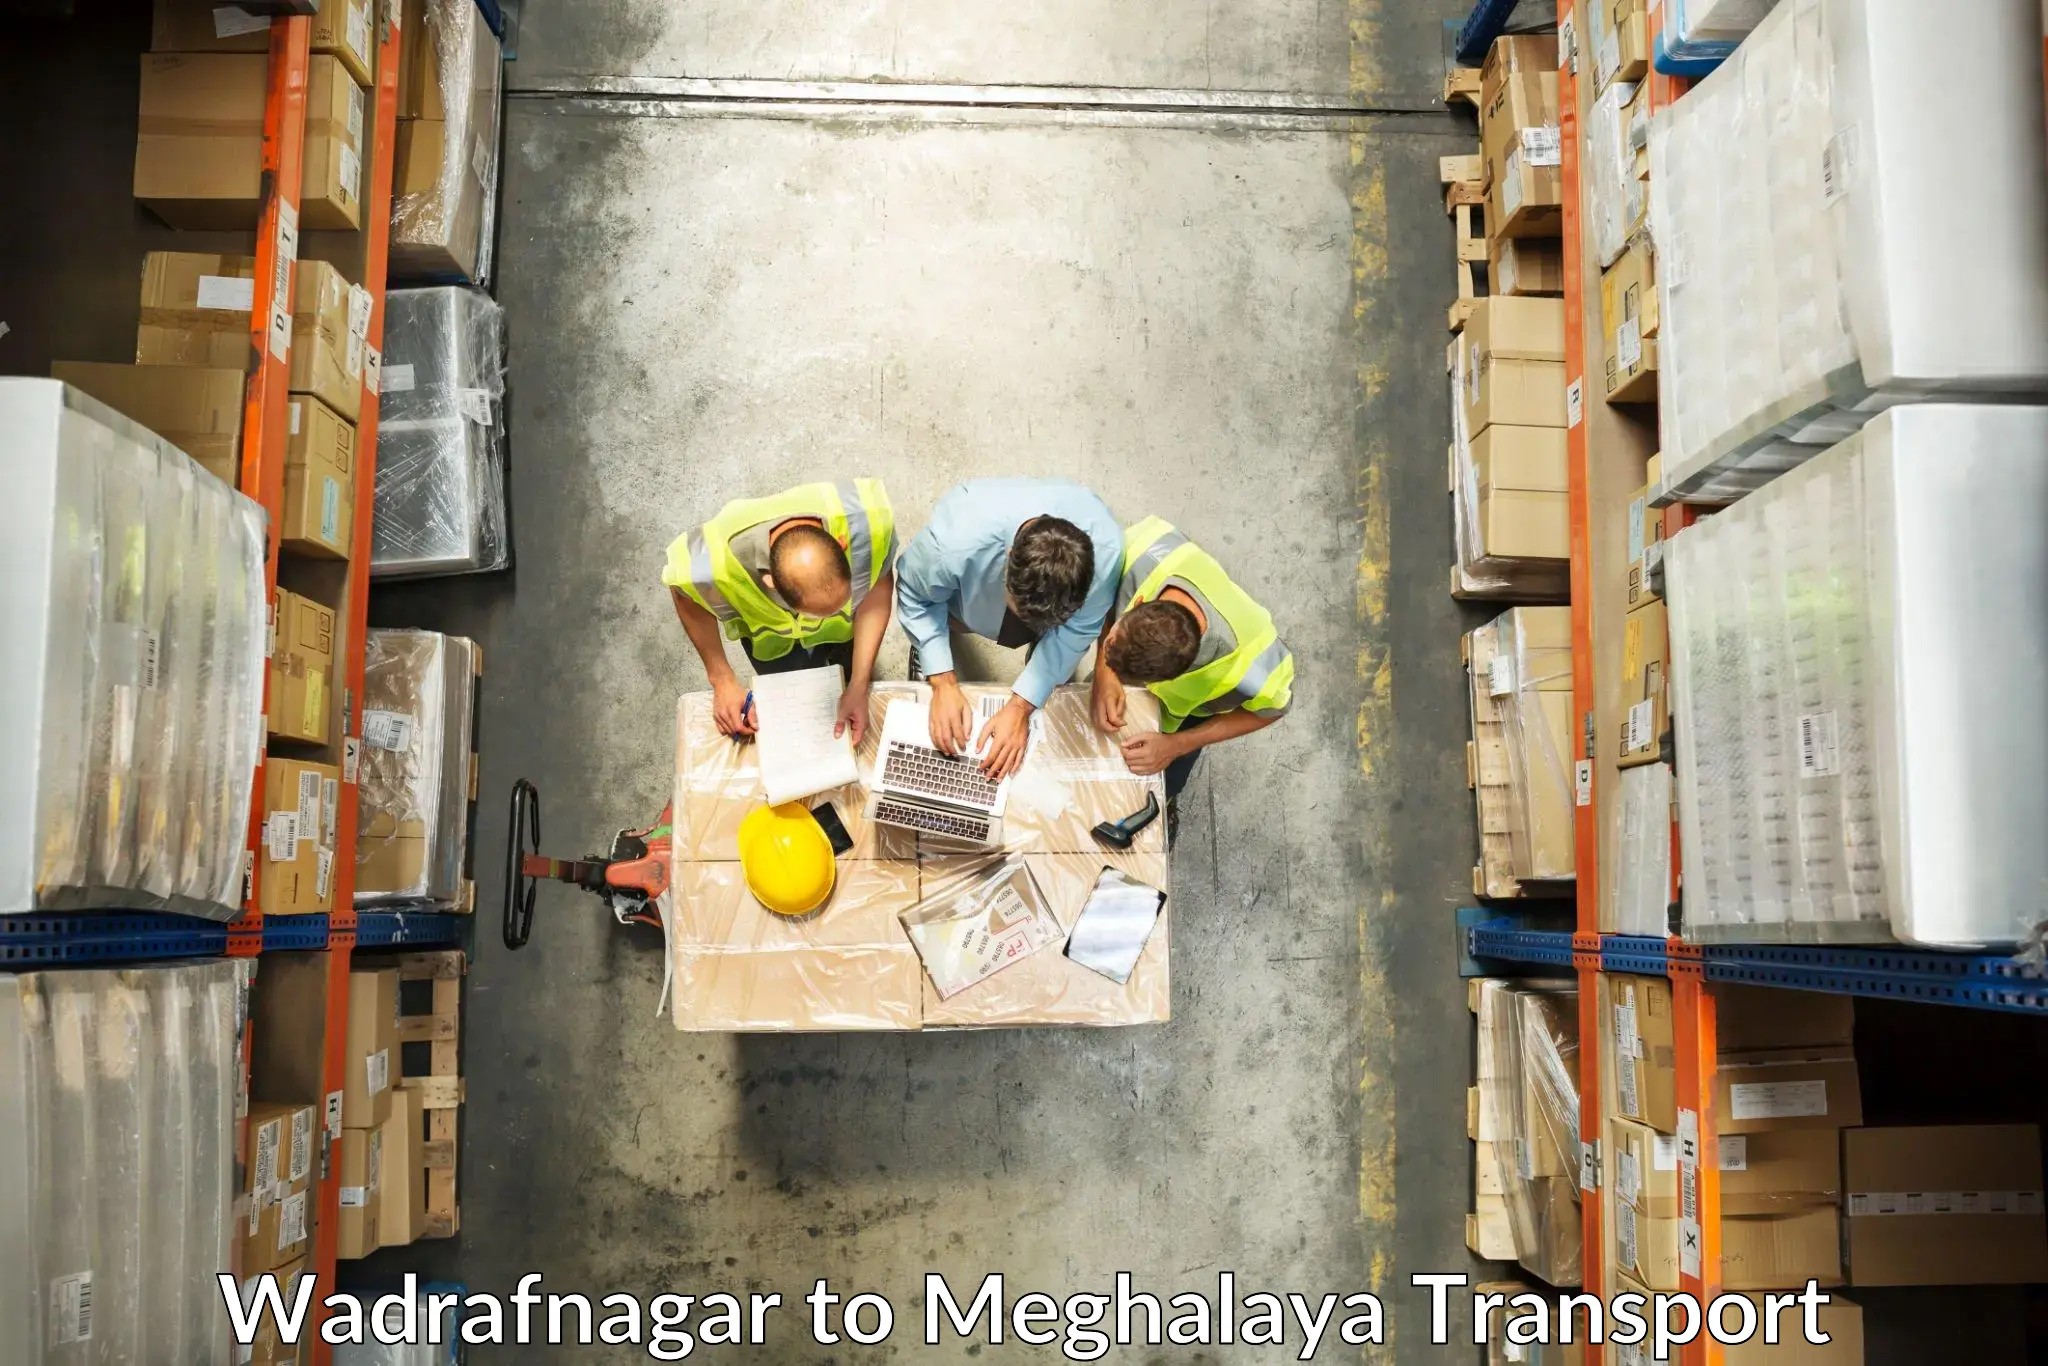 Parcel transport services Wadrafnagar to NIT Meghalaya